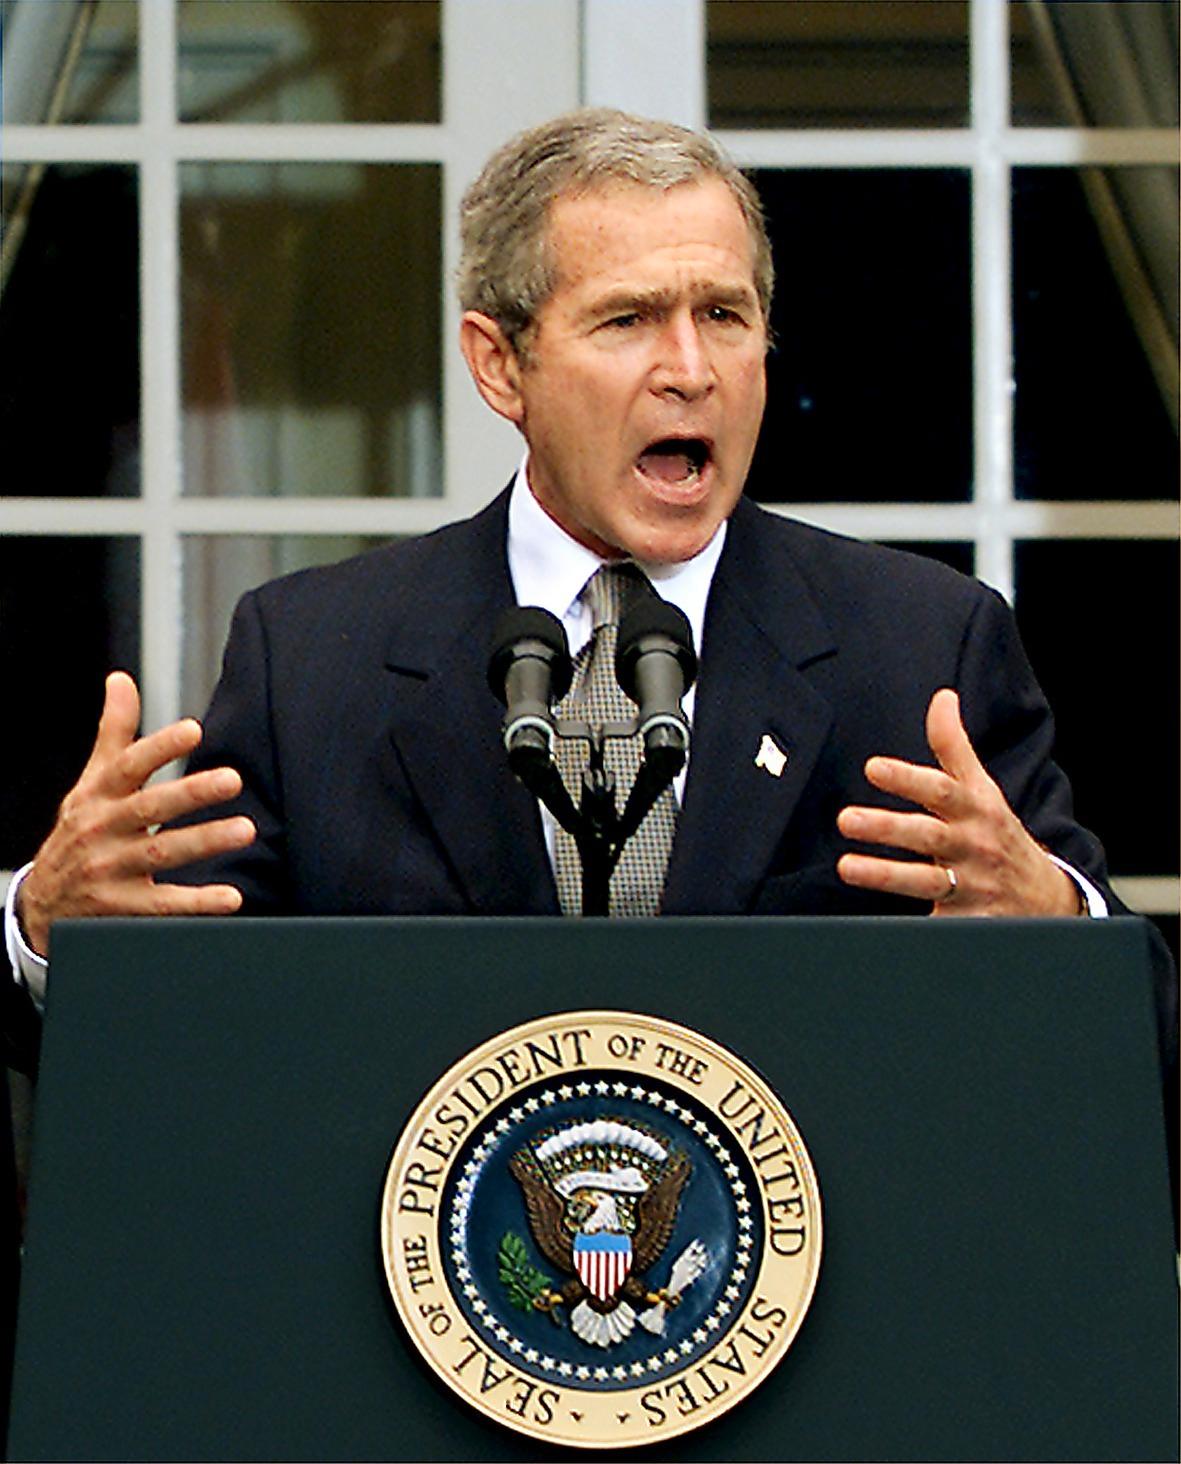 George W Bush tillkännager den nya lagen mot terrorism, Patriot Act, kort efter terrorattackerna 2001. Och den tioåriga jakten på al-Qaida-ledaren Usama bin Ladin börjar.